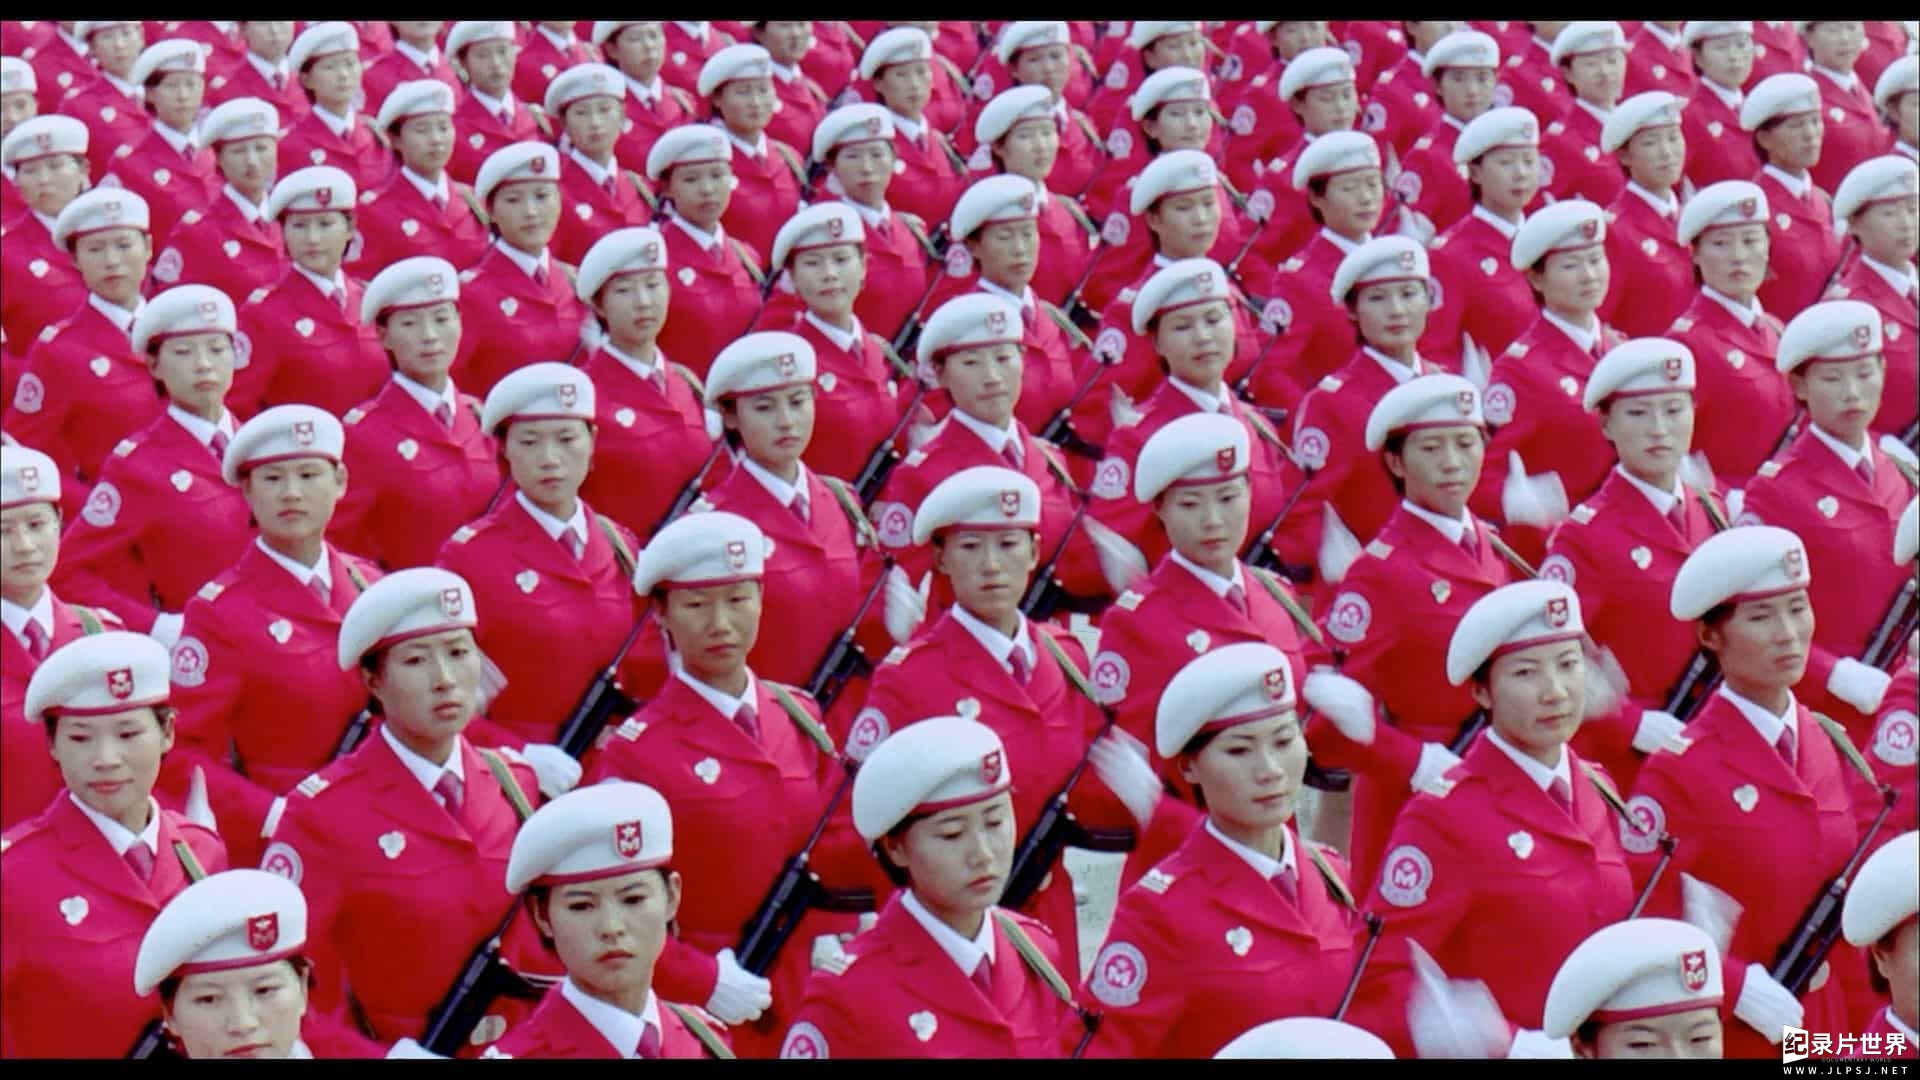 China's 60th Anniversary Chinese Military Celebration 2009 BluRay REMUX 1080p AVC LPCM5